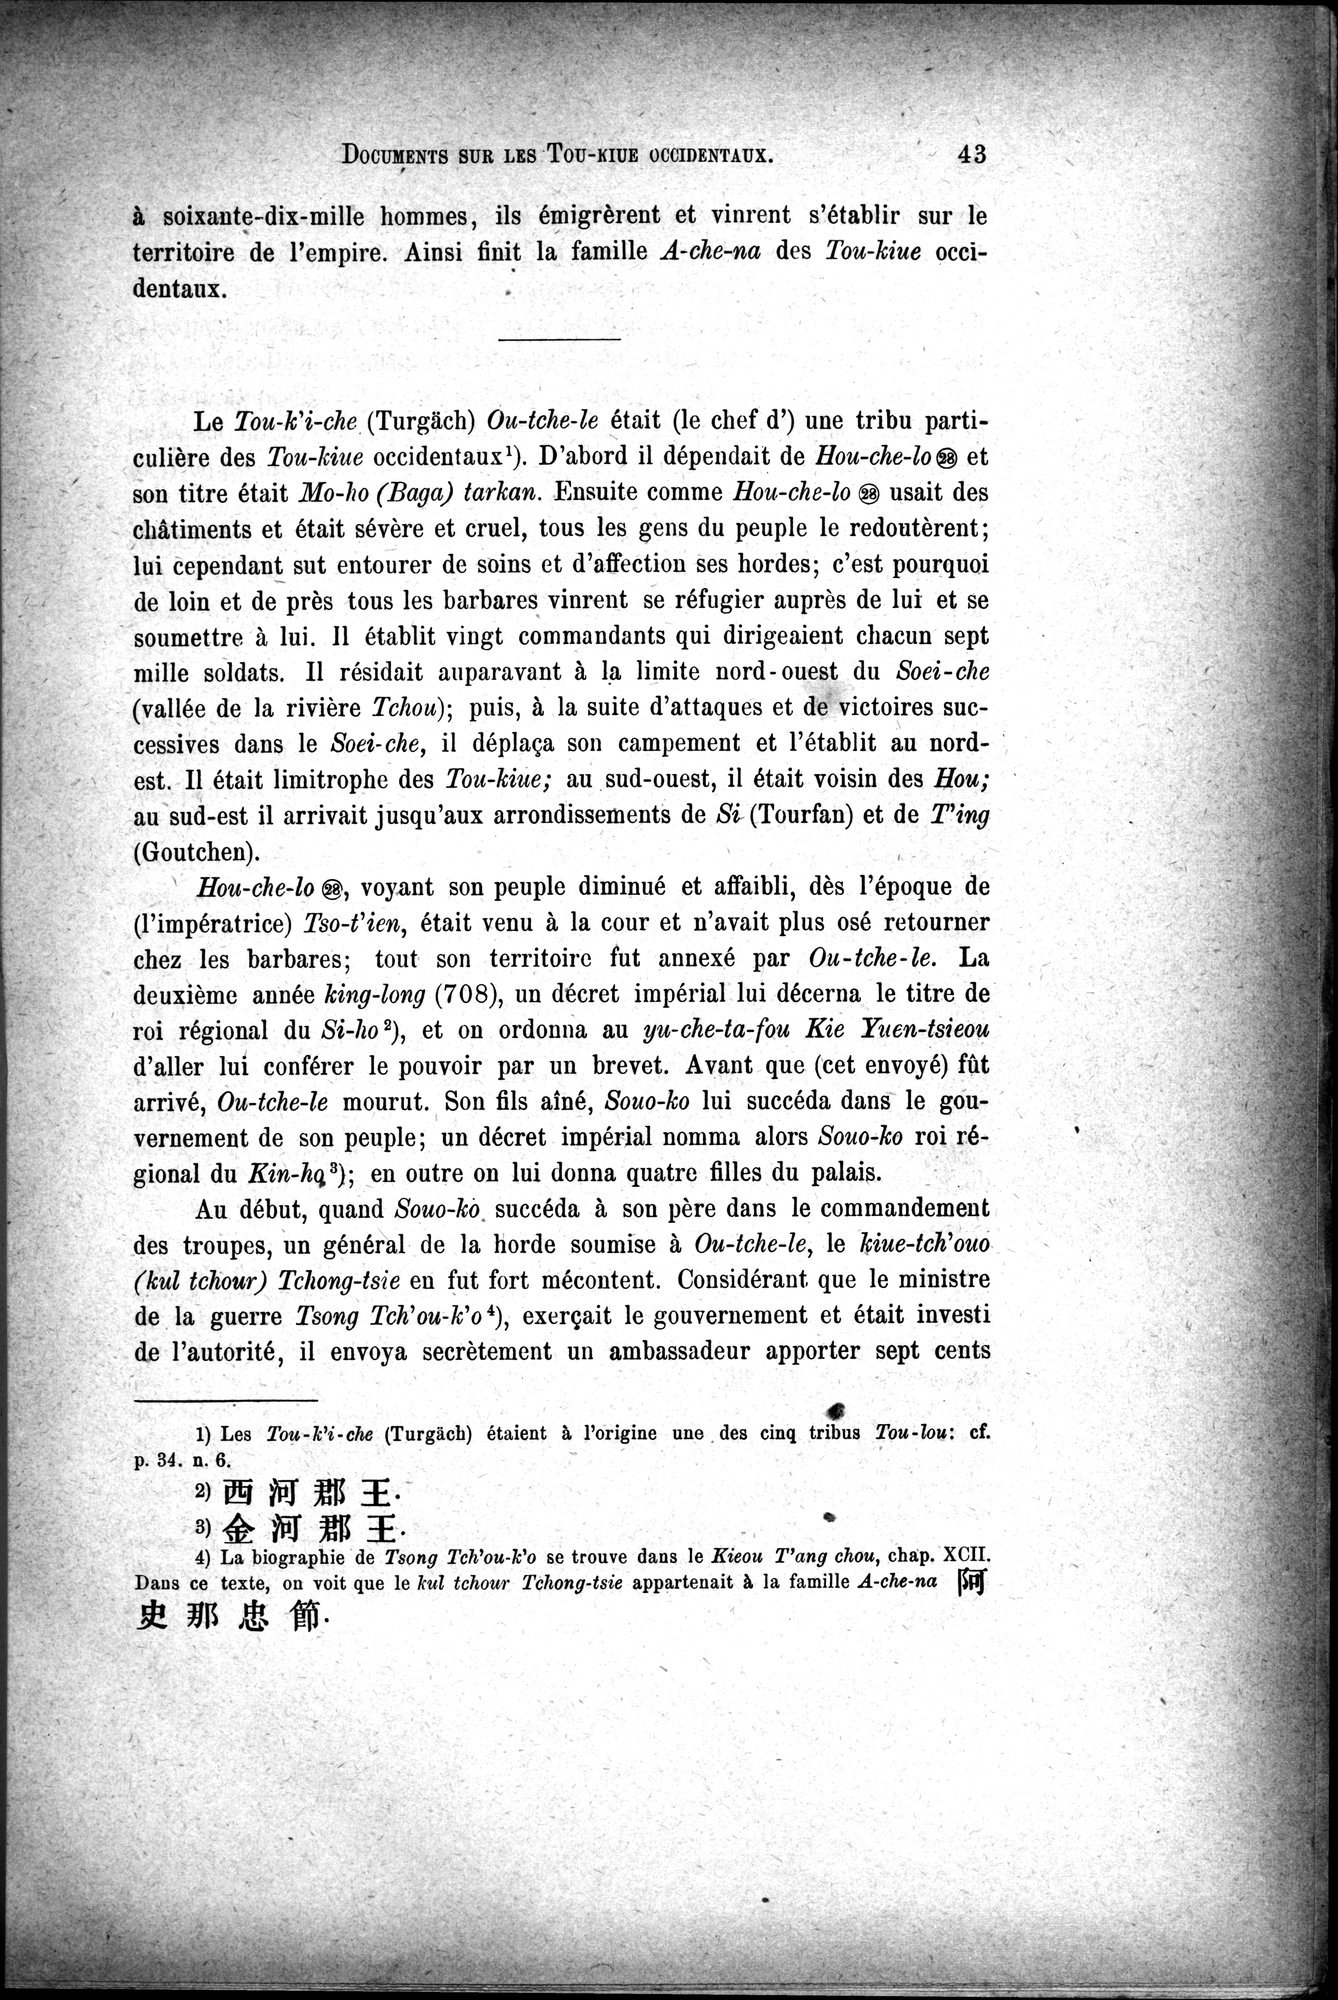 Documents sur les Tou-kiue (Turcs) occidentaux : vol.1 / Page 53 (Grayscale High Resolution Image)